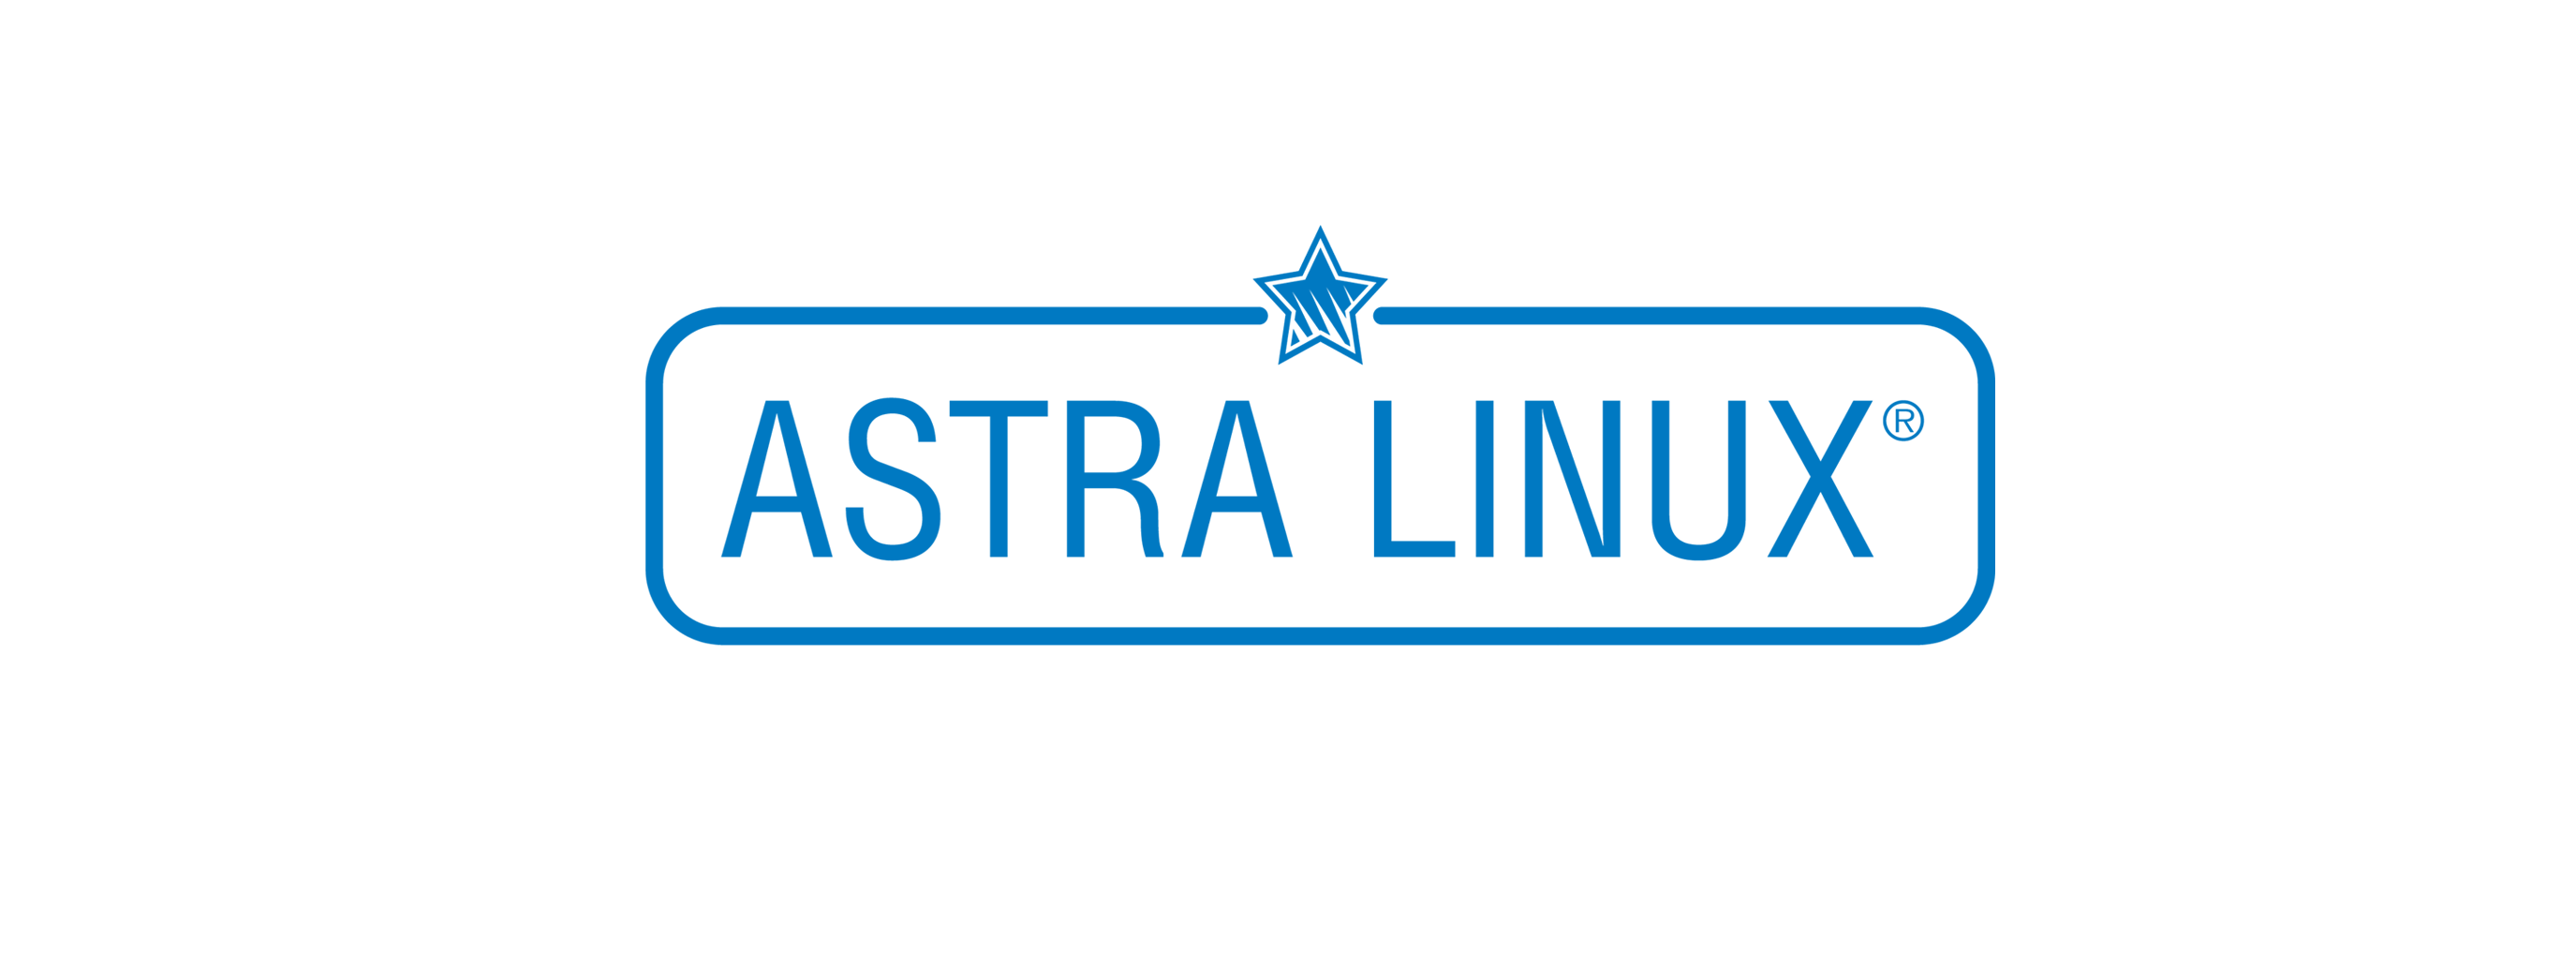 Лицензия РусБИТех Astra Linux Special Edition (очередное обновление 1.7), уровень защищенности Максимальный (Смоленск), РУСБ.10015-01 (ФСТЭК), Russian, на срок действия исключительного права базовая лицензия для виртуального сервера, электронный ключ (OS2